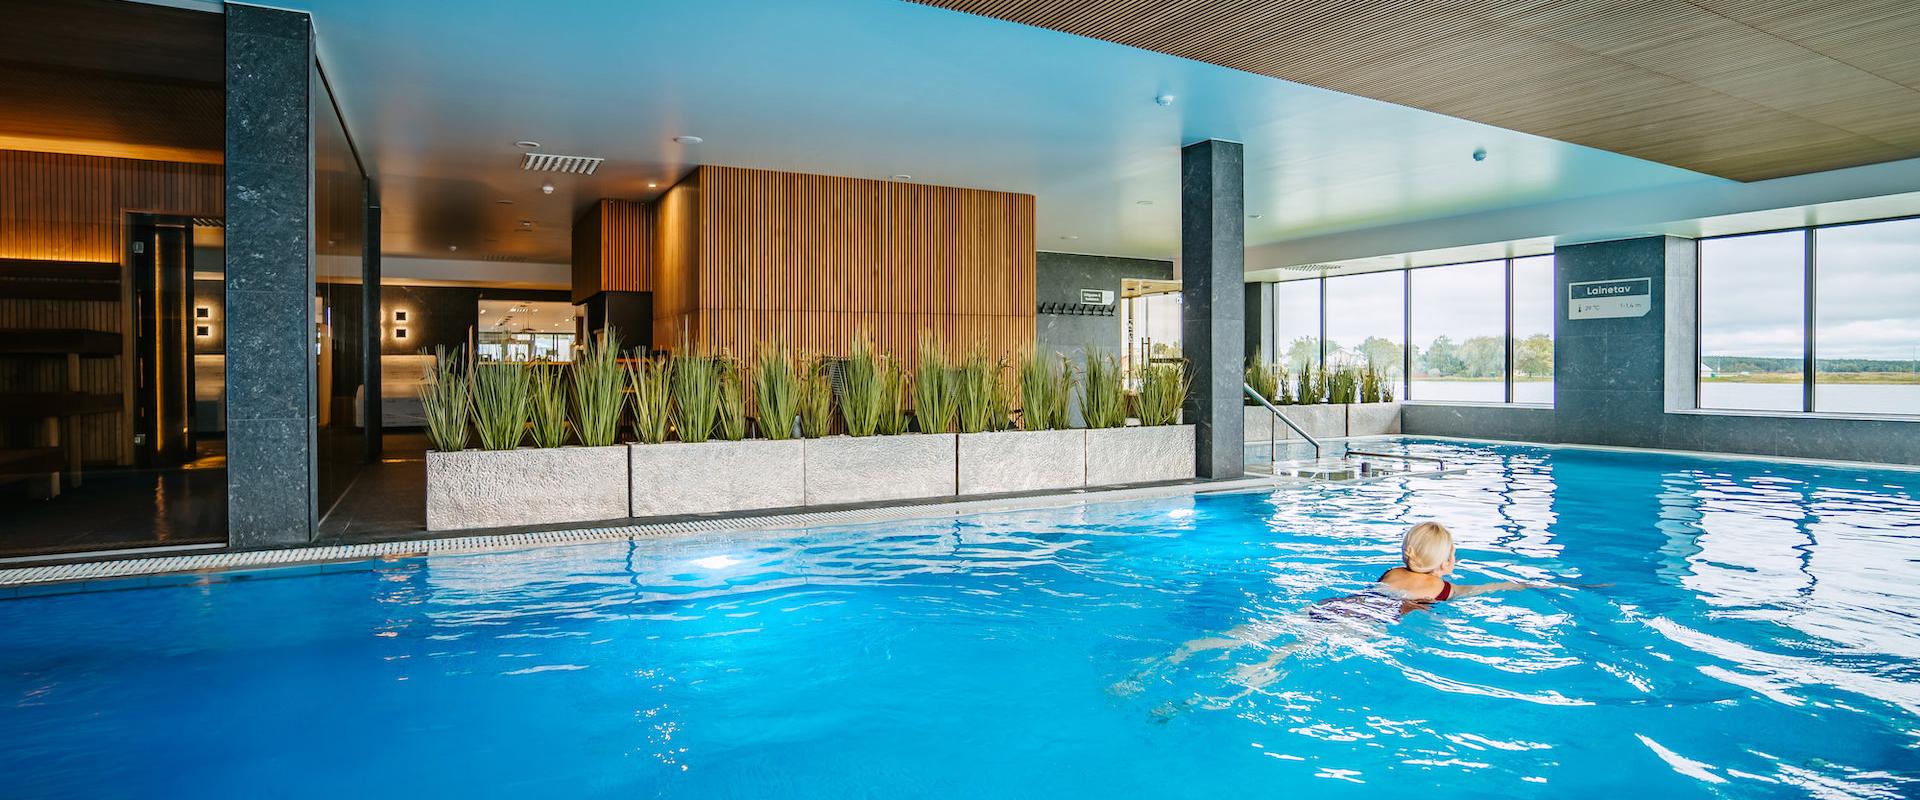 Hyvinvointi ja tasapaino merenrannalla ♥ Hestia Hotel Haapsalu Span vesi- ja saunakylpylässä voit rentoutua monella eri tavalla. Voit nauttia vedestä 